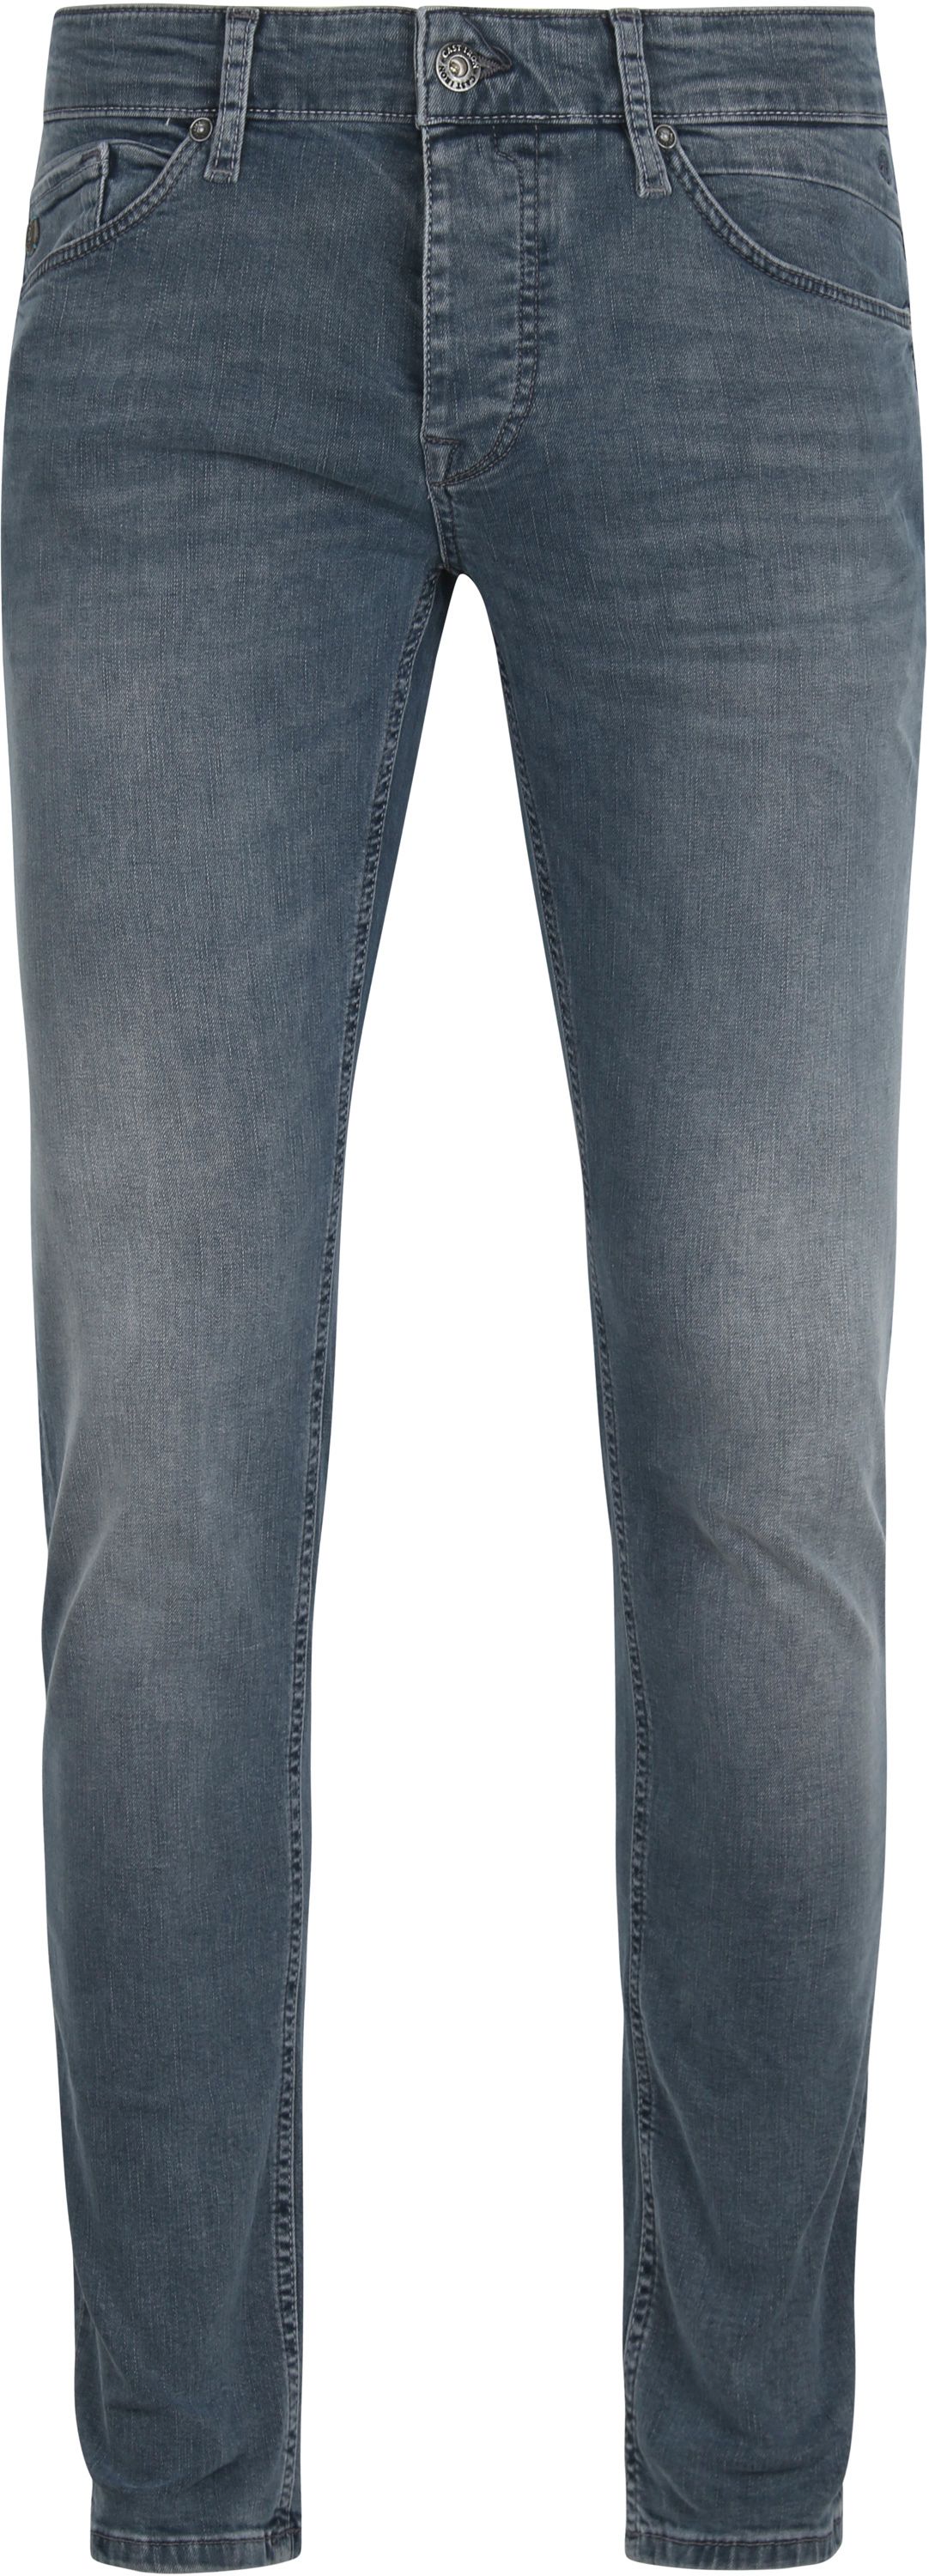 Cast Iron Riser Jeans Slim Grey size W 30